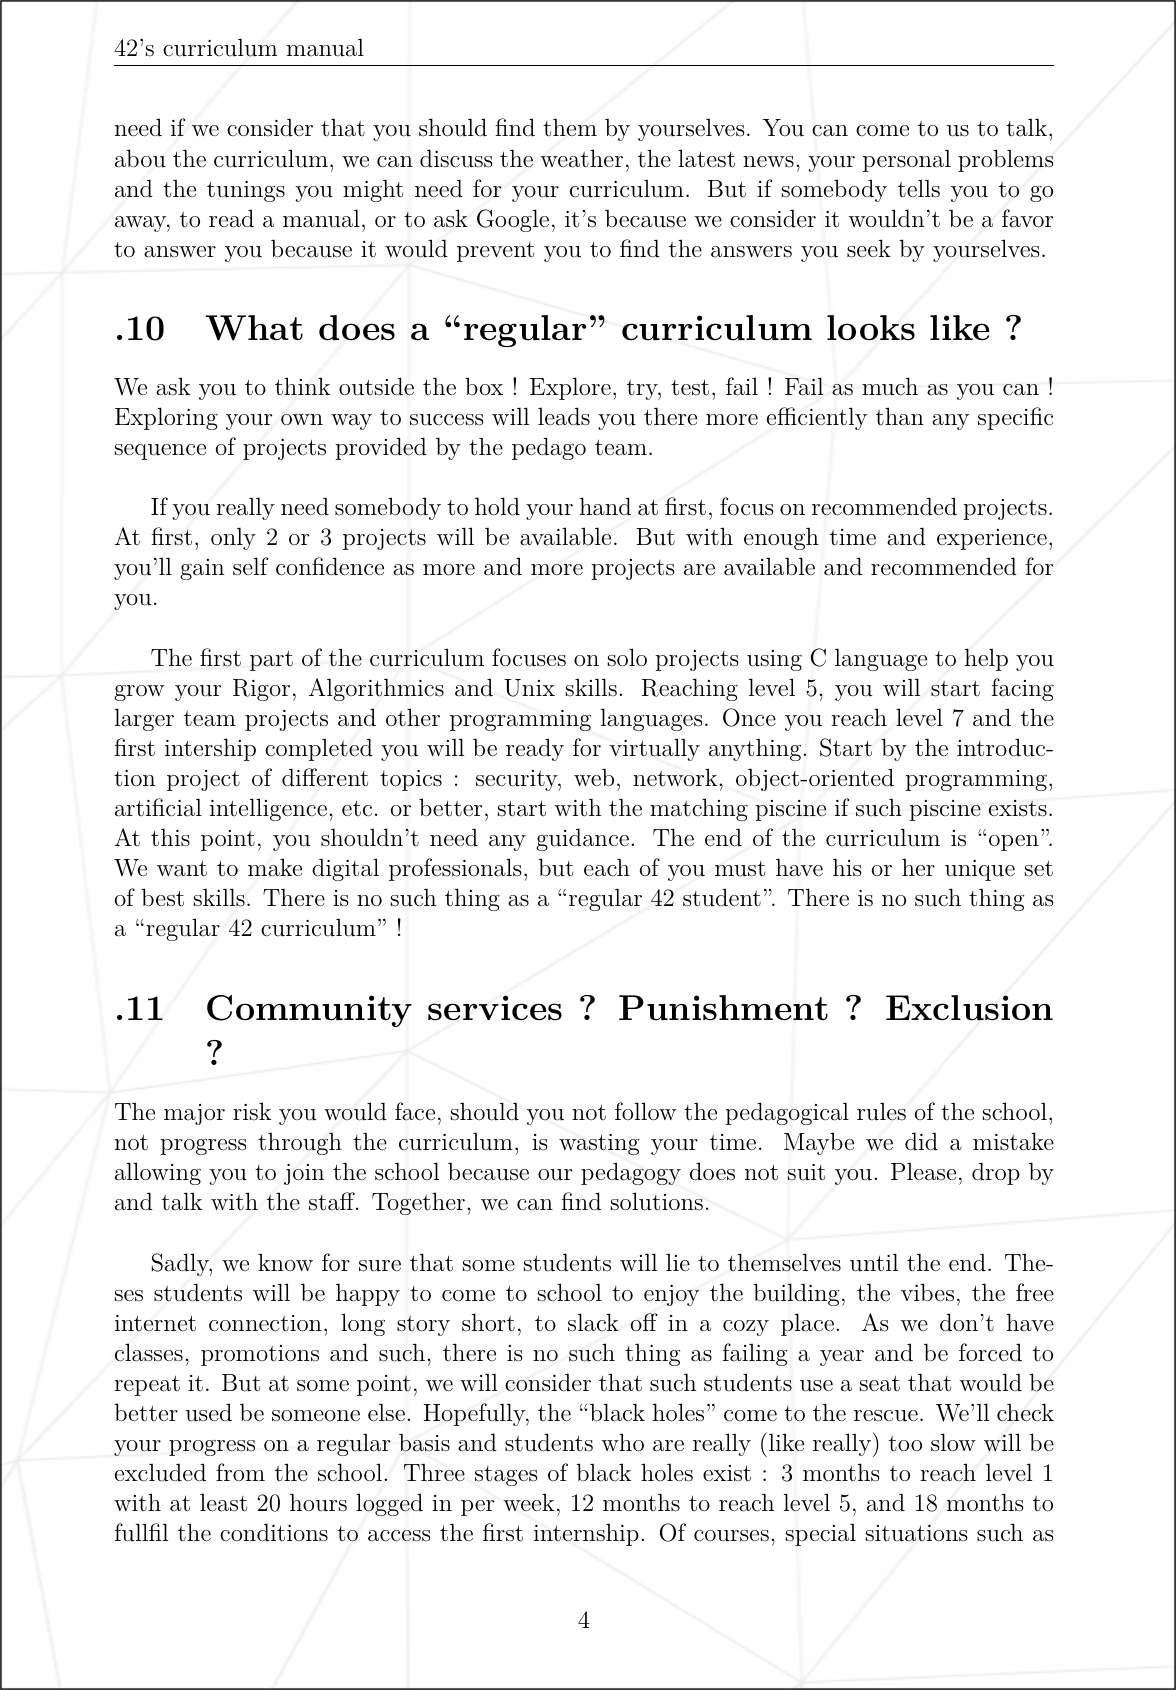 Page 5 of 6 - Cursus Manual.en